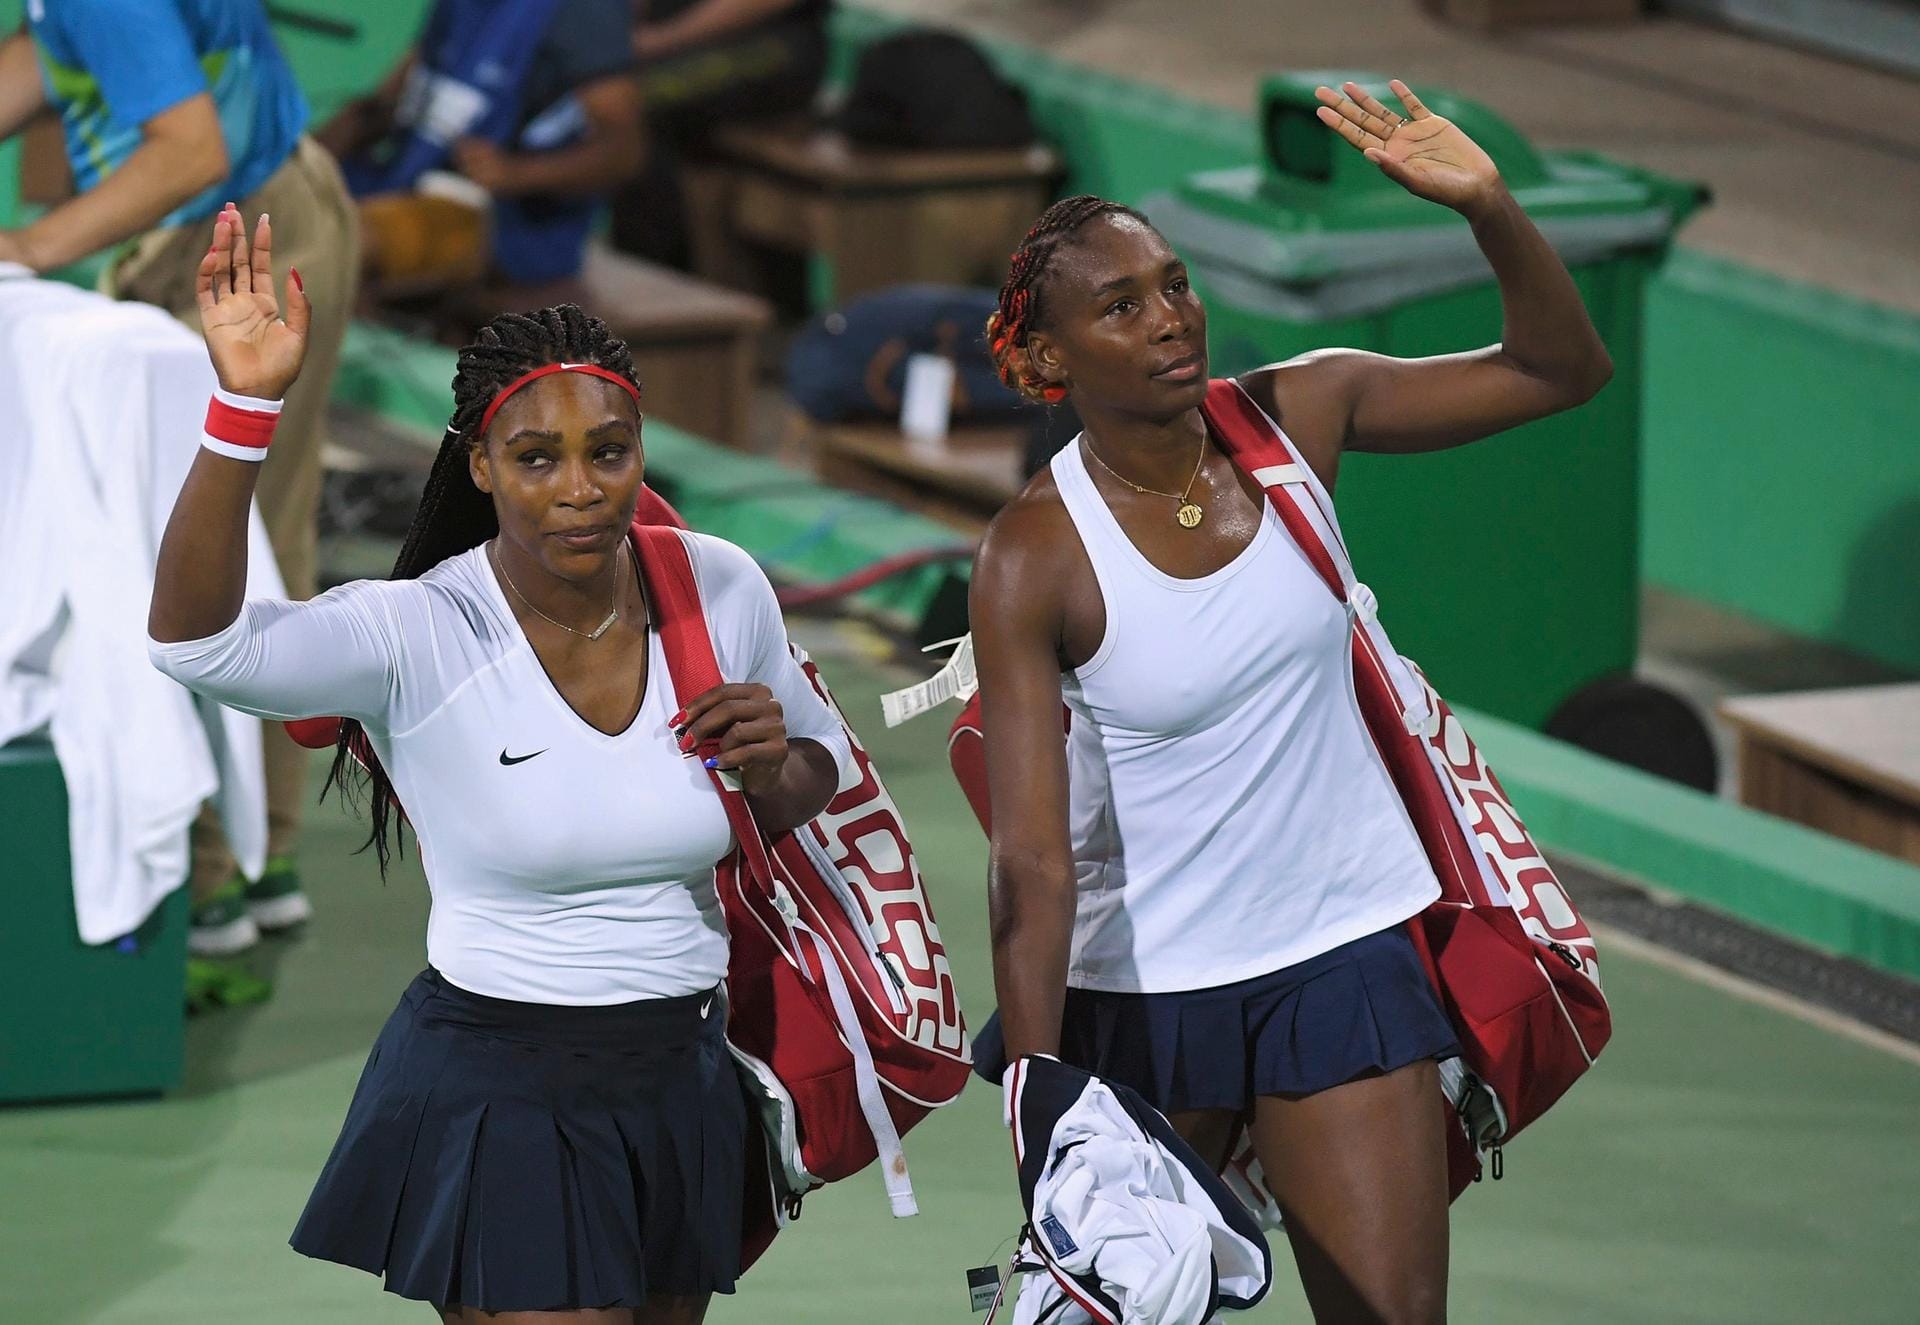 Abschiedsgruß: Überraschend sind Serena Williams (links) und ihre Schwester Venus bereits in der ersten Runde des Doppelturniers im Tennis ausgeschieden. Die US-Amerikanerinnen verloren in zwei Sätzen gegen das Duo Lucie Safarova/Barbora Strycova aus Tschechien.